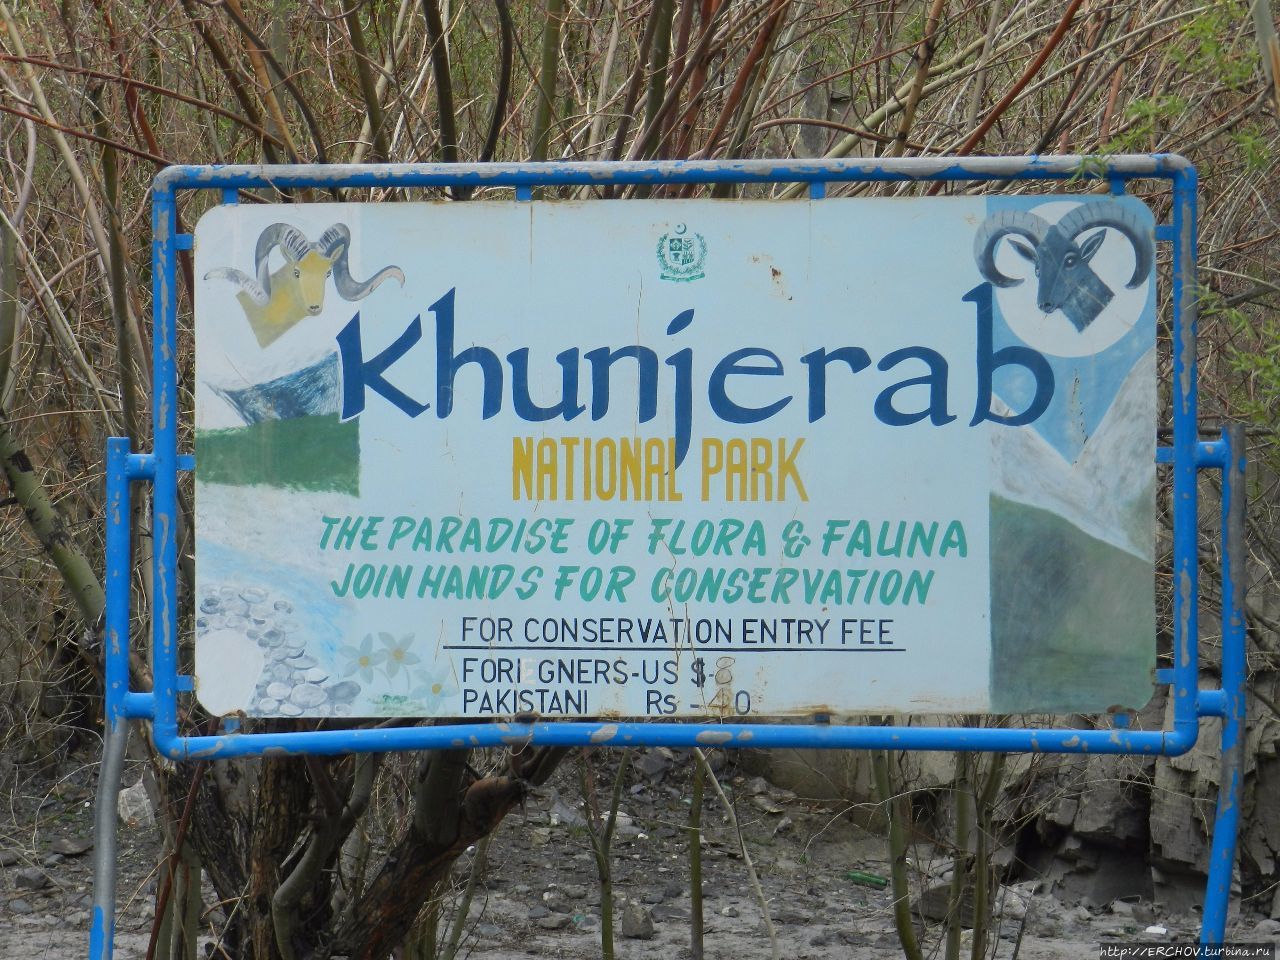 Пакистан. Ч — 25. Хунджерабский перевал и национальный парк Каримабад, Пакистан